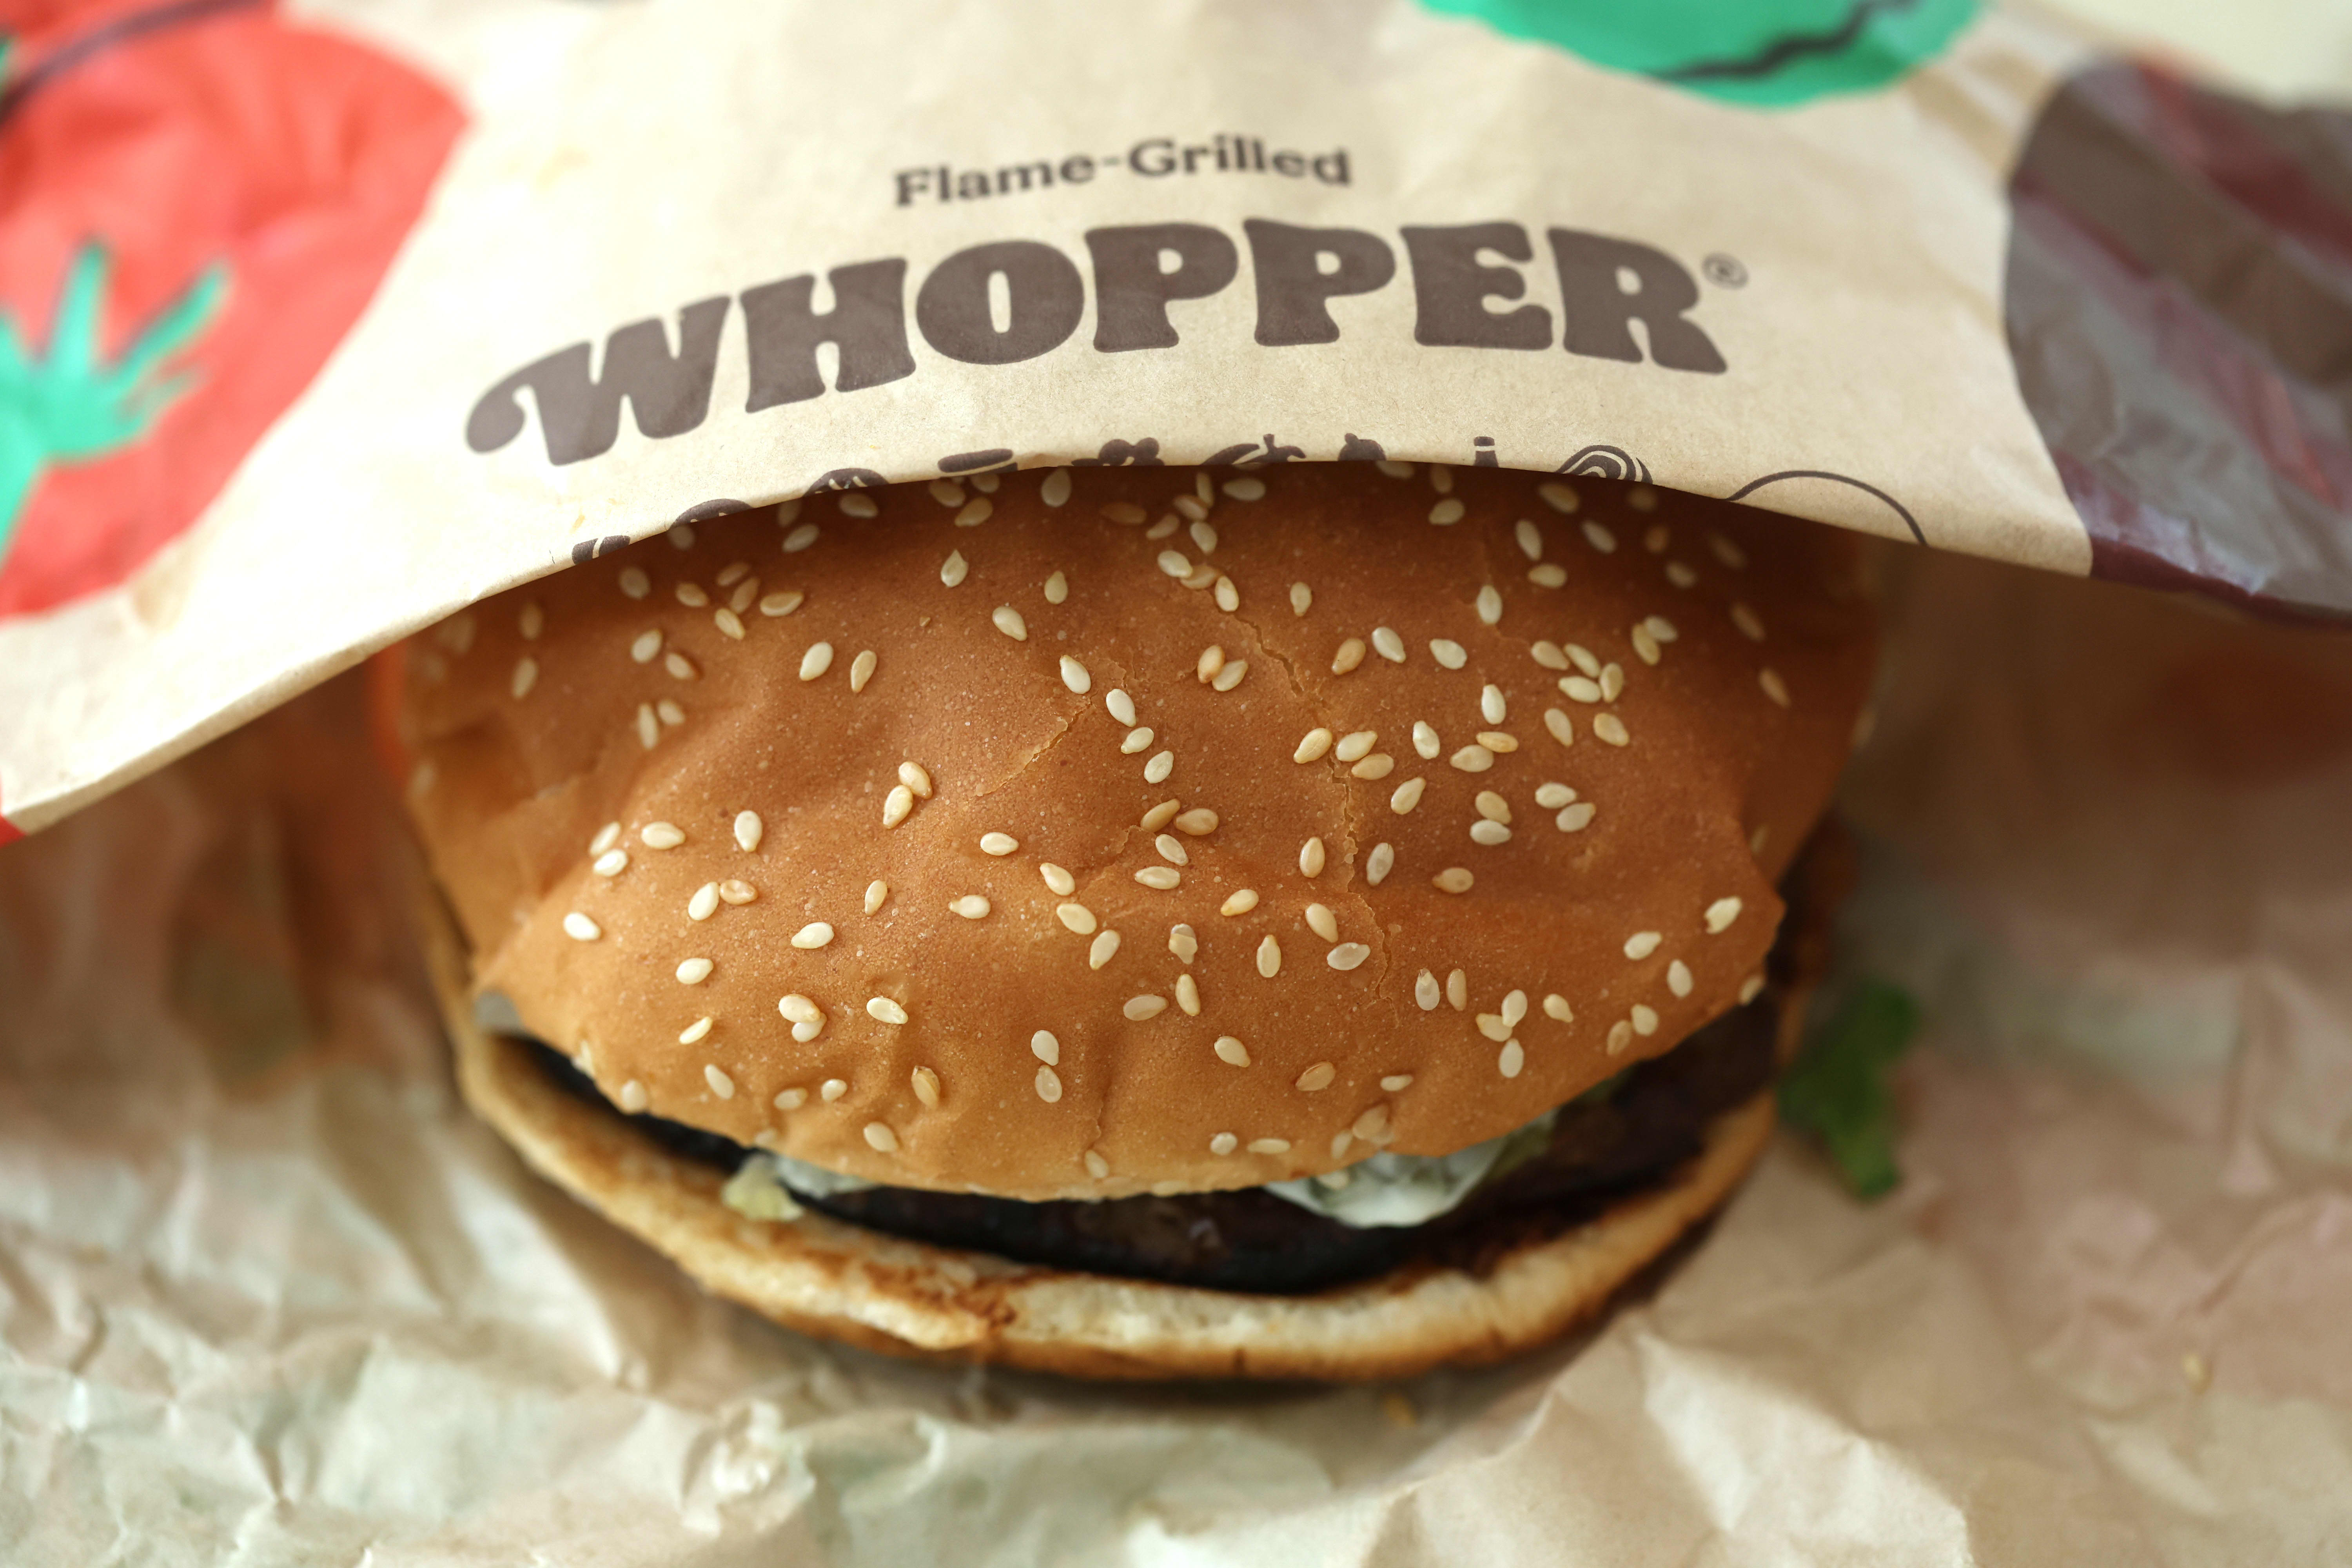 Burger King'S Turnaround Plan Boosts Sales, Customer Satisfaction